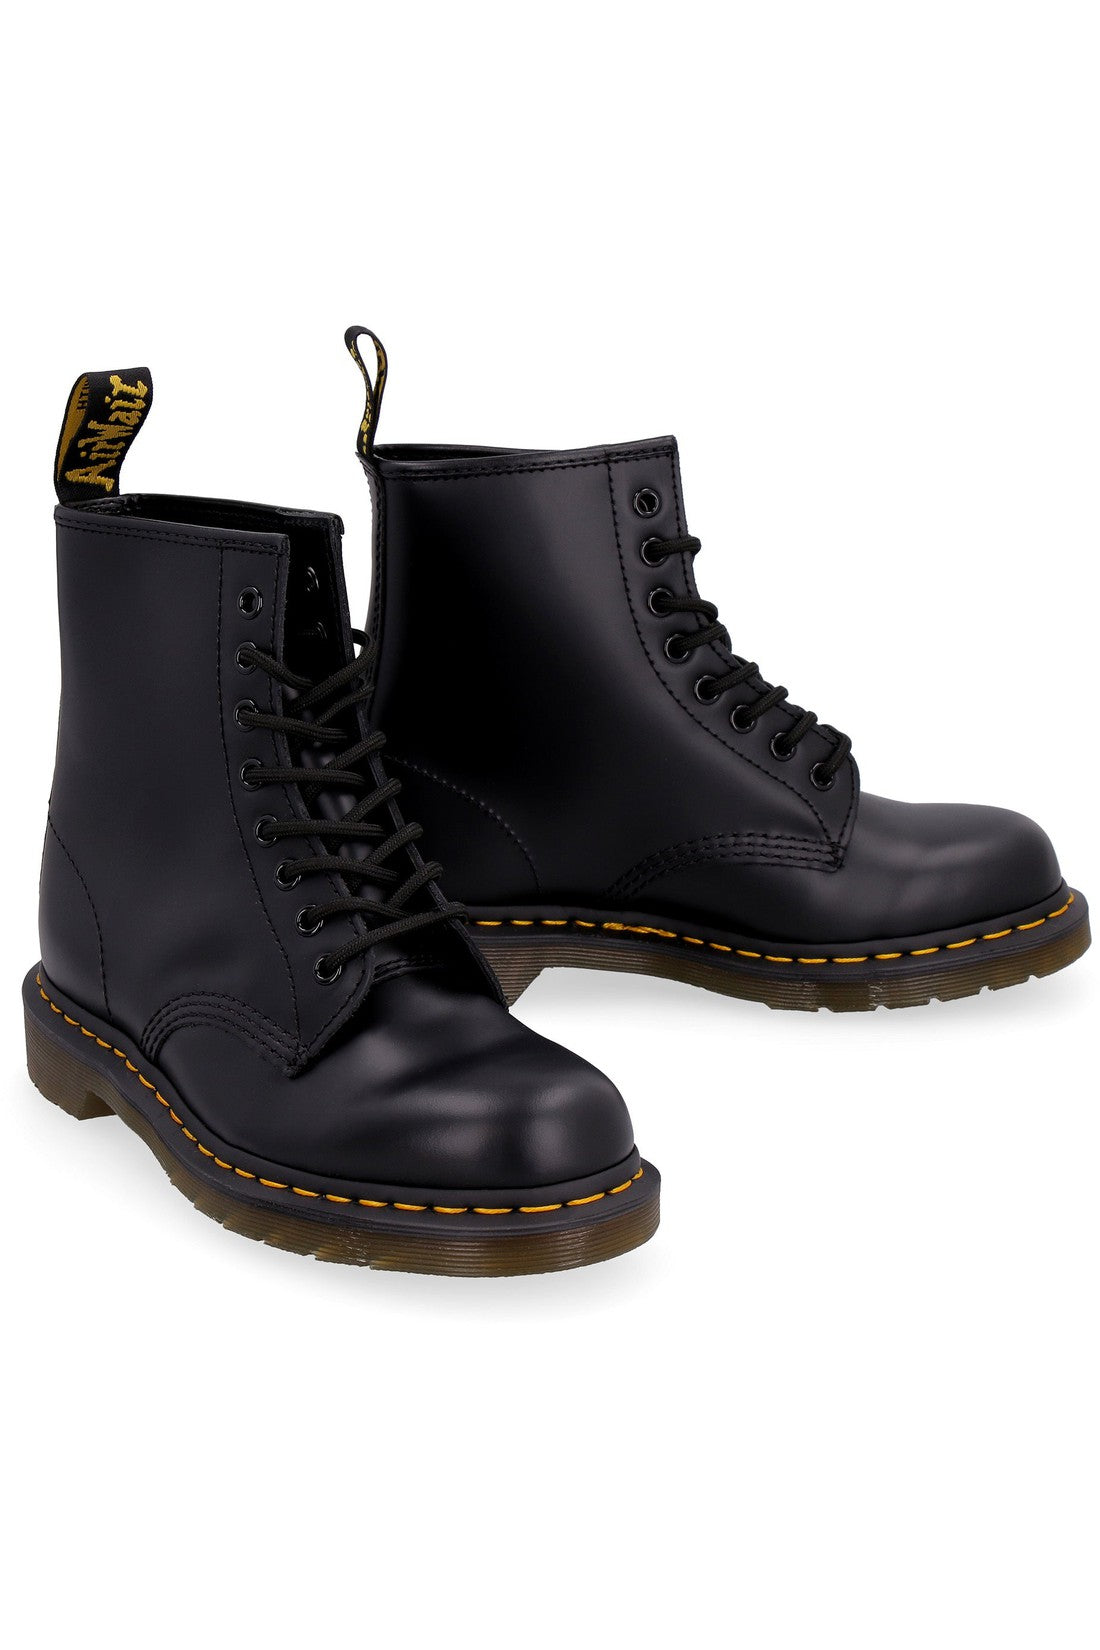 Dr. Martens-OUTLET-SALE-1460 leather combat boots-ARCHIVIST